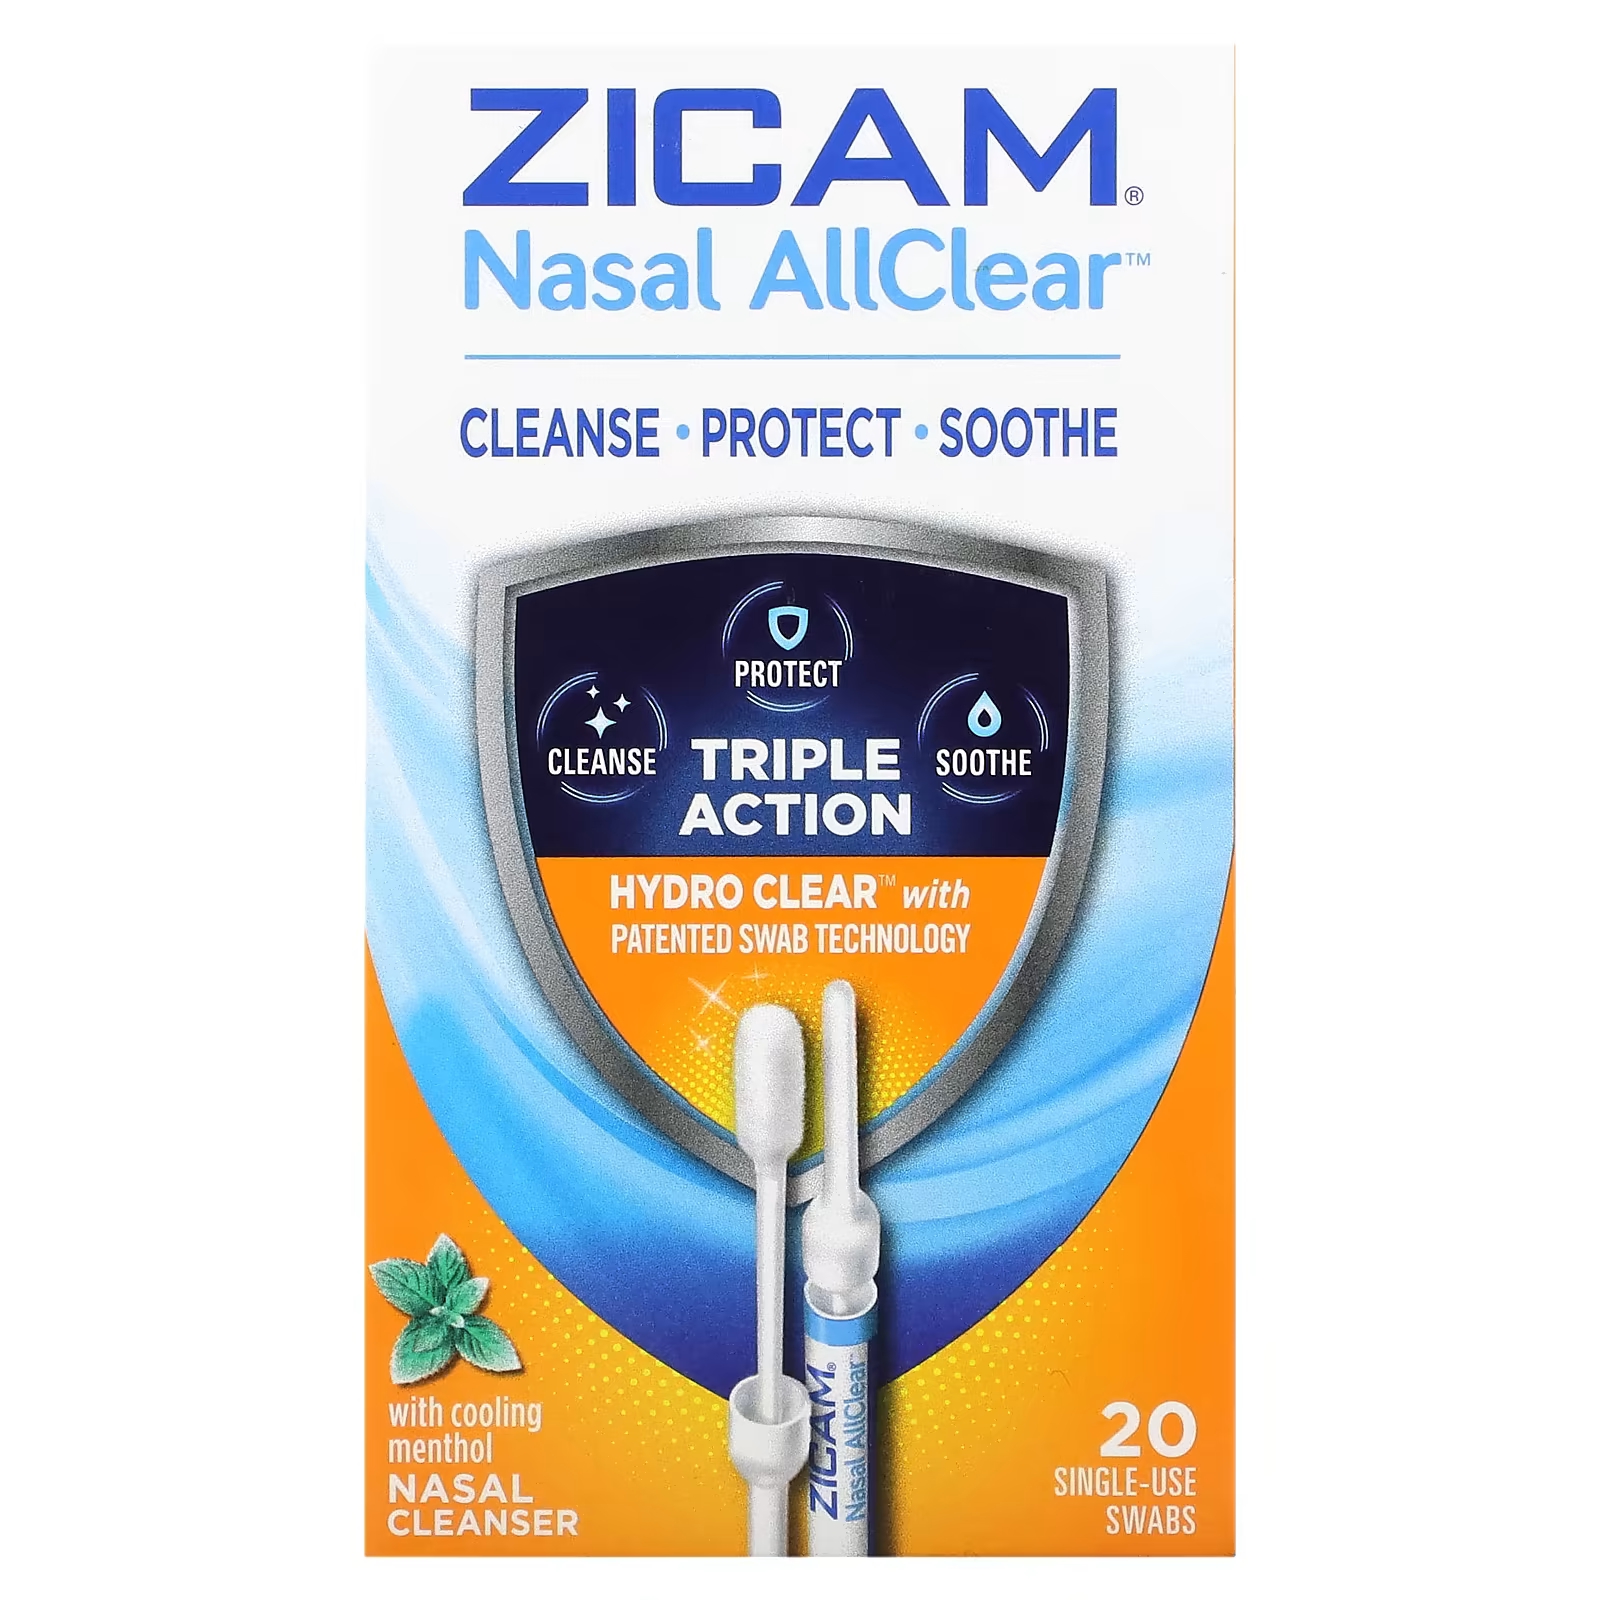 Средство для носа Zicam Nasal AllClear очищающее с охлаждающим ментолом, 20 одноразовых тампонов